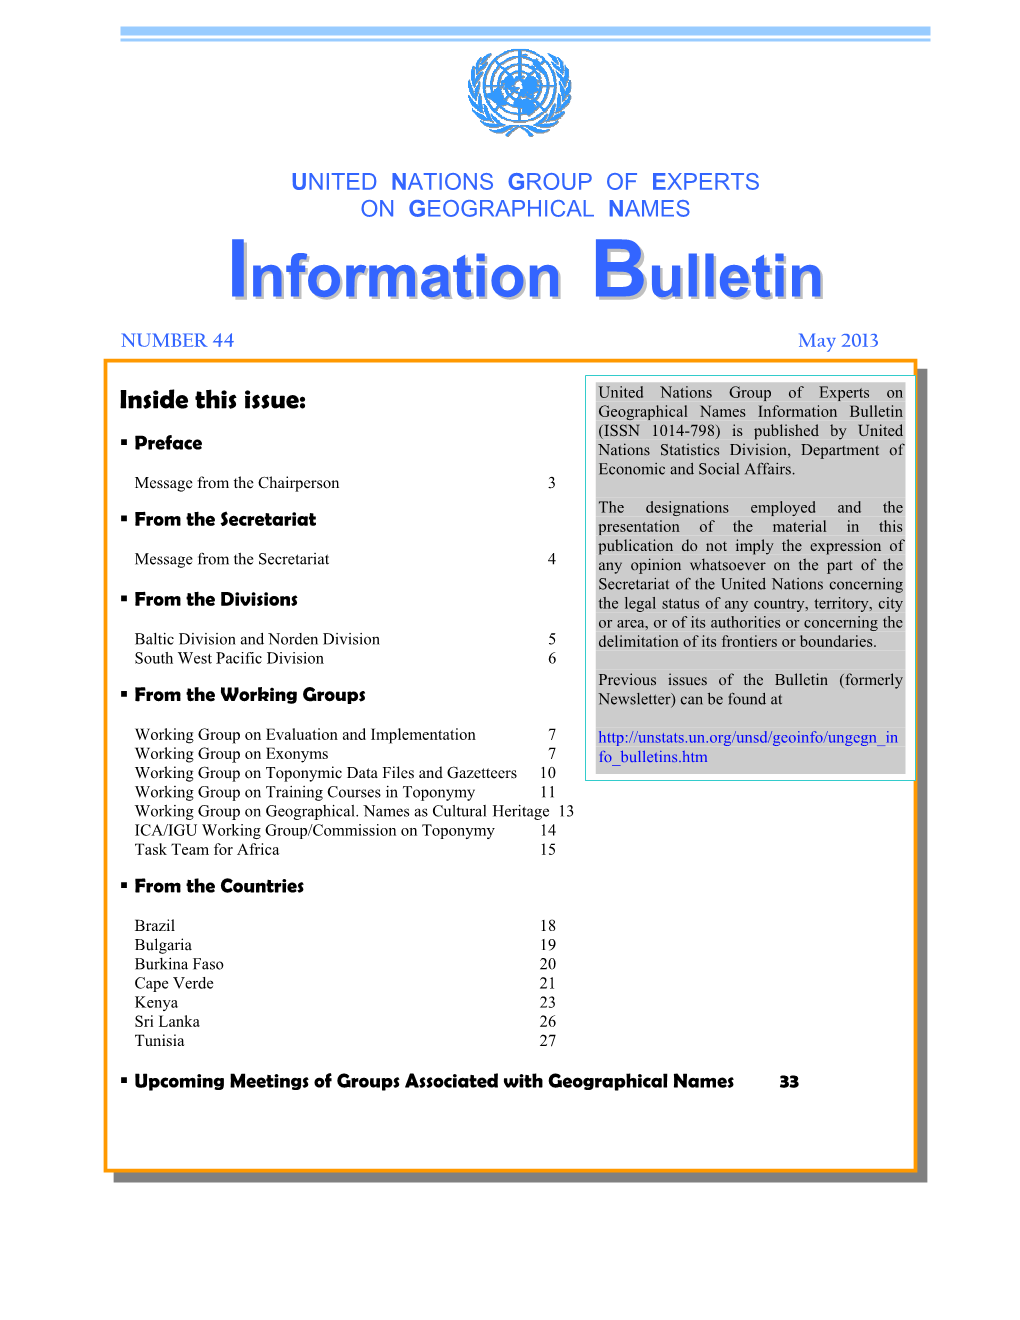 UNGEGN Information Bulletin 44